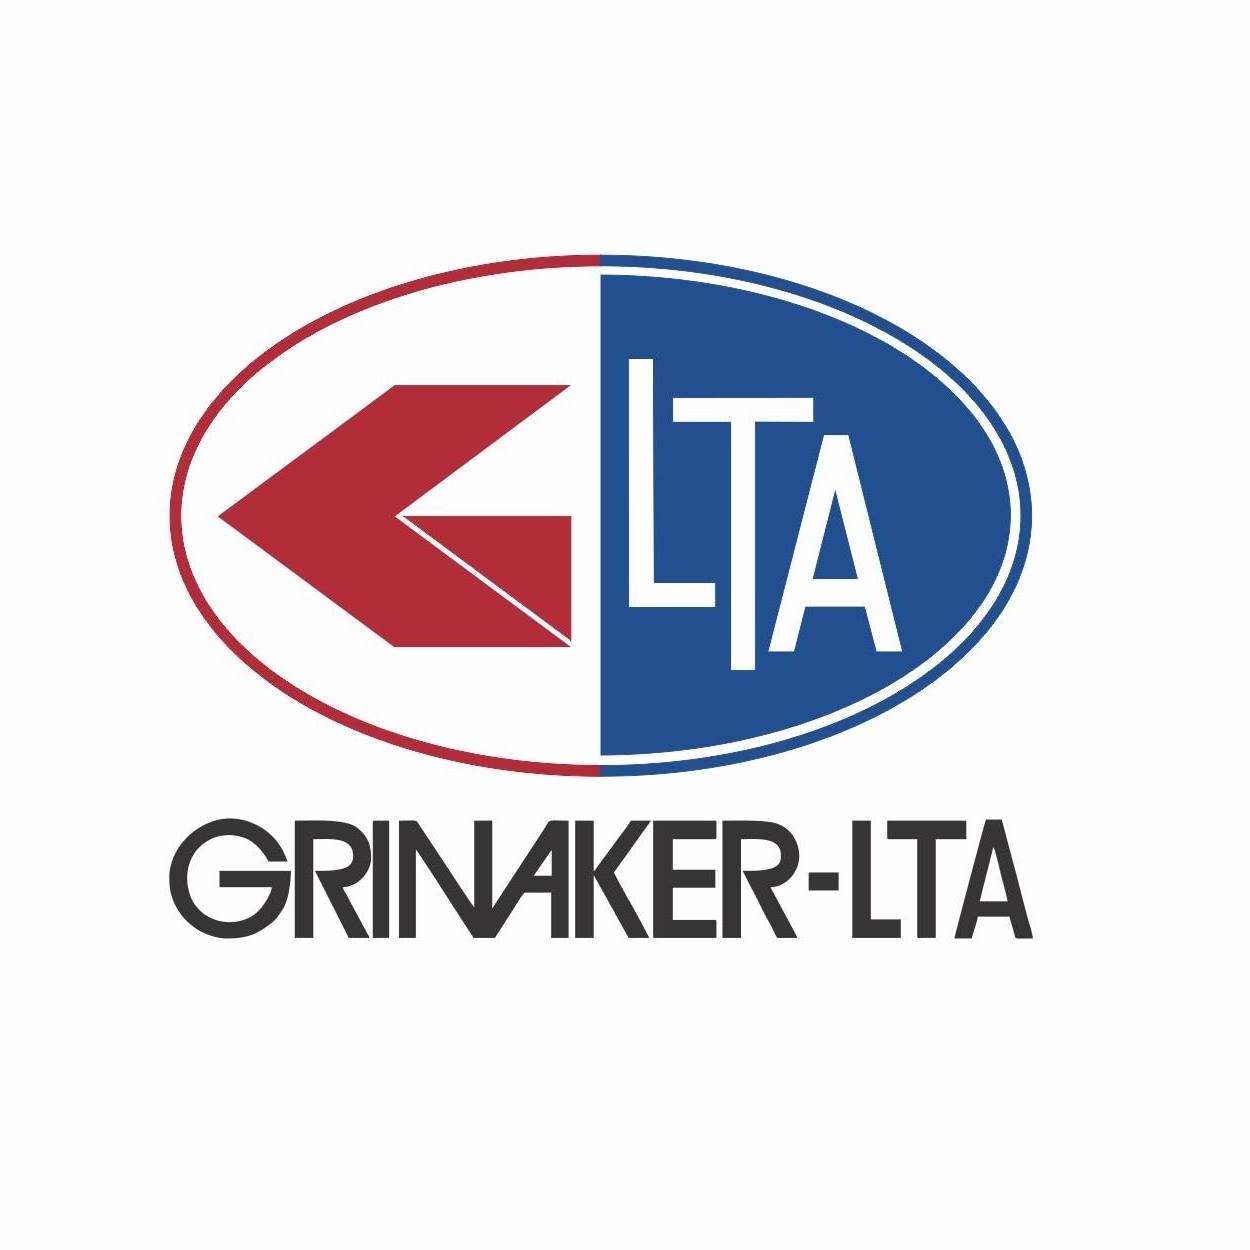 Grinaker-LTA Logo